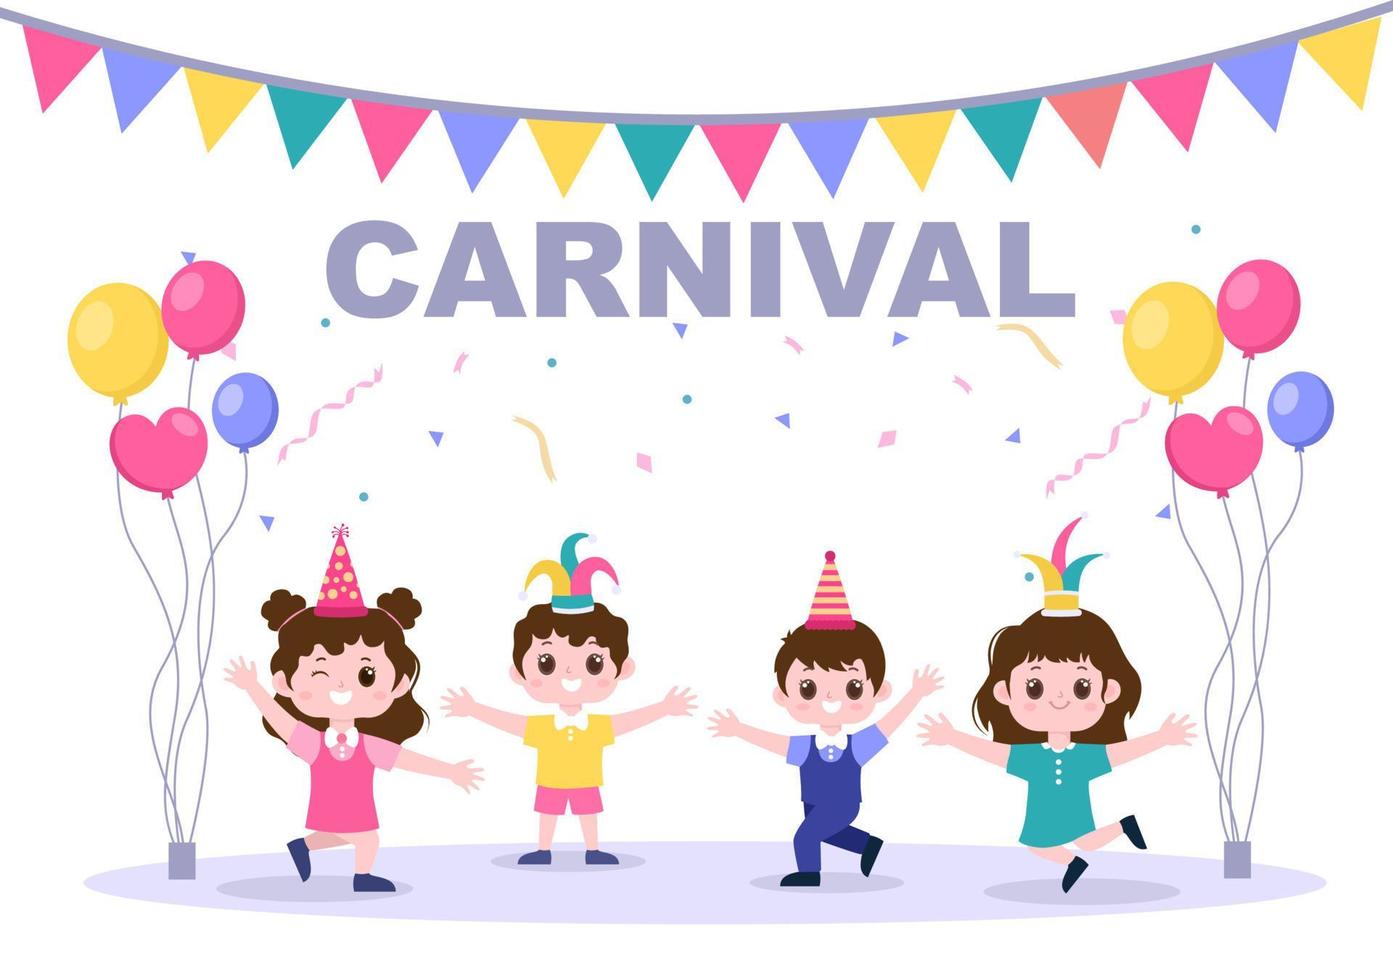 joyeux carnaval célébration fond illustration vectorielle. festival populaire avec fête colorée, confettis, danse, musique et costumes lumineux pour affiche vecteur